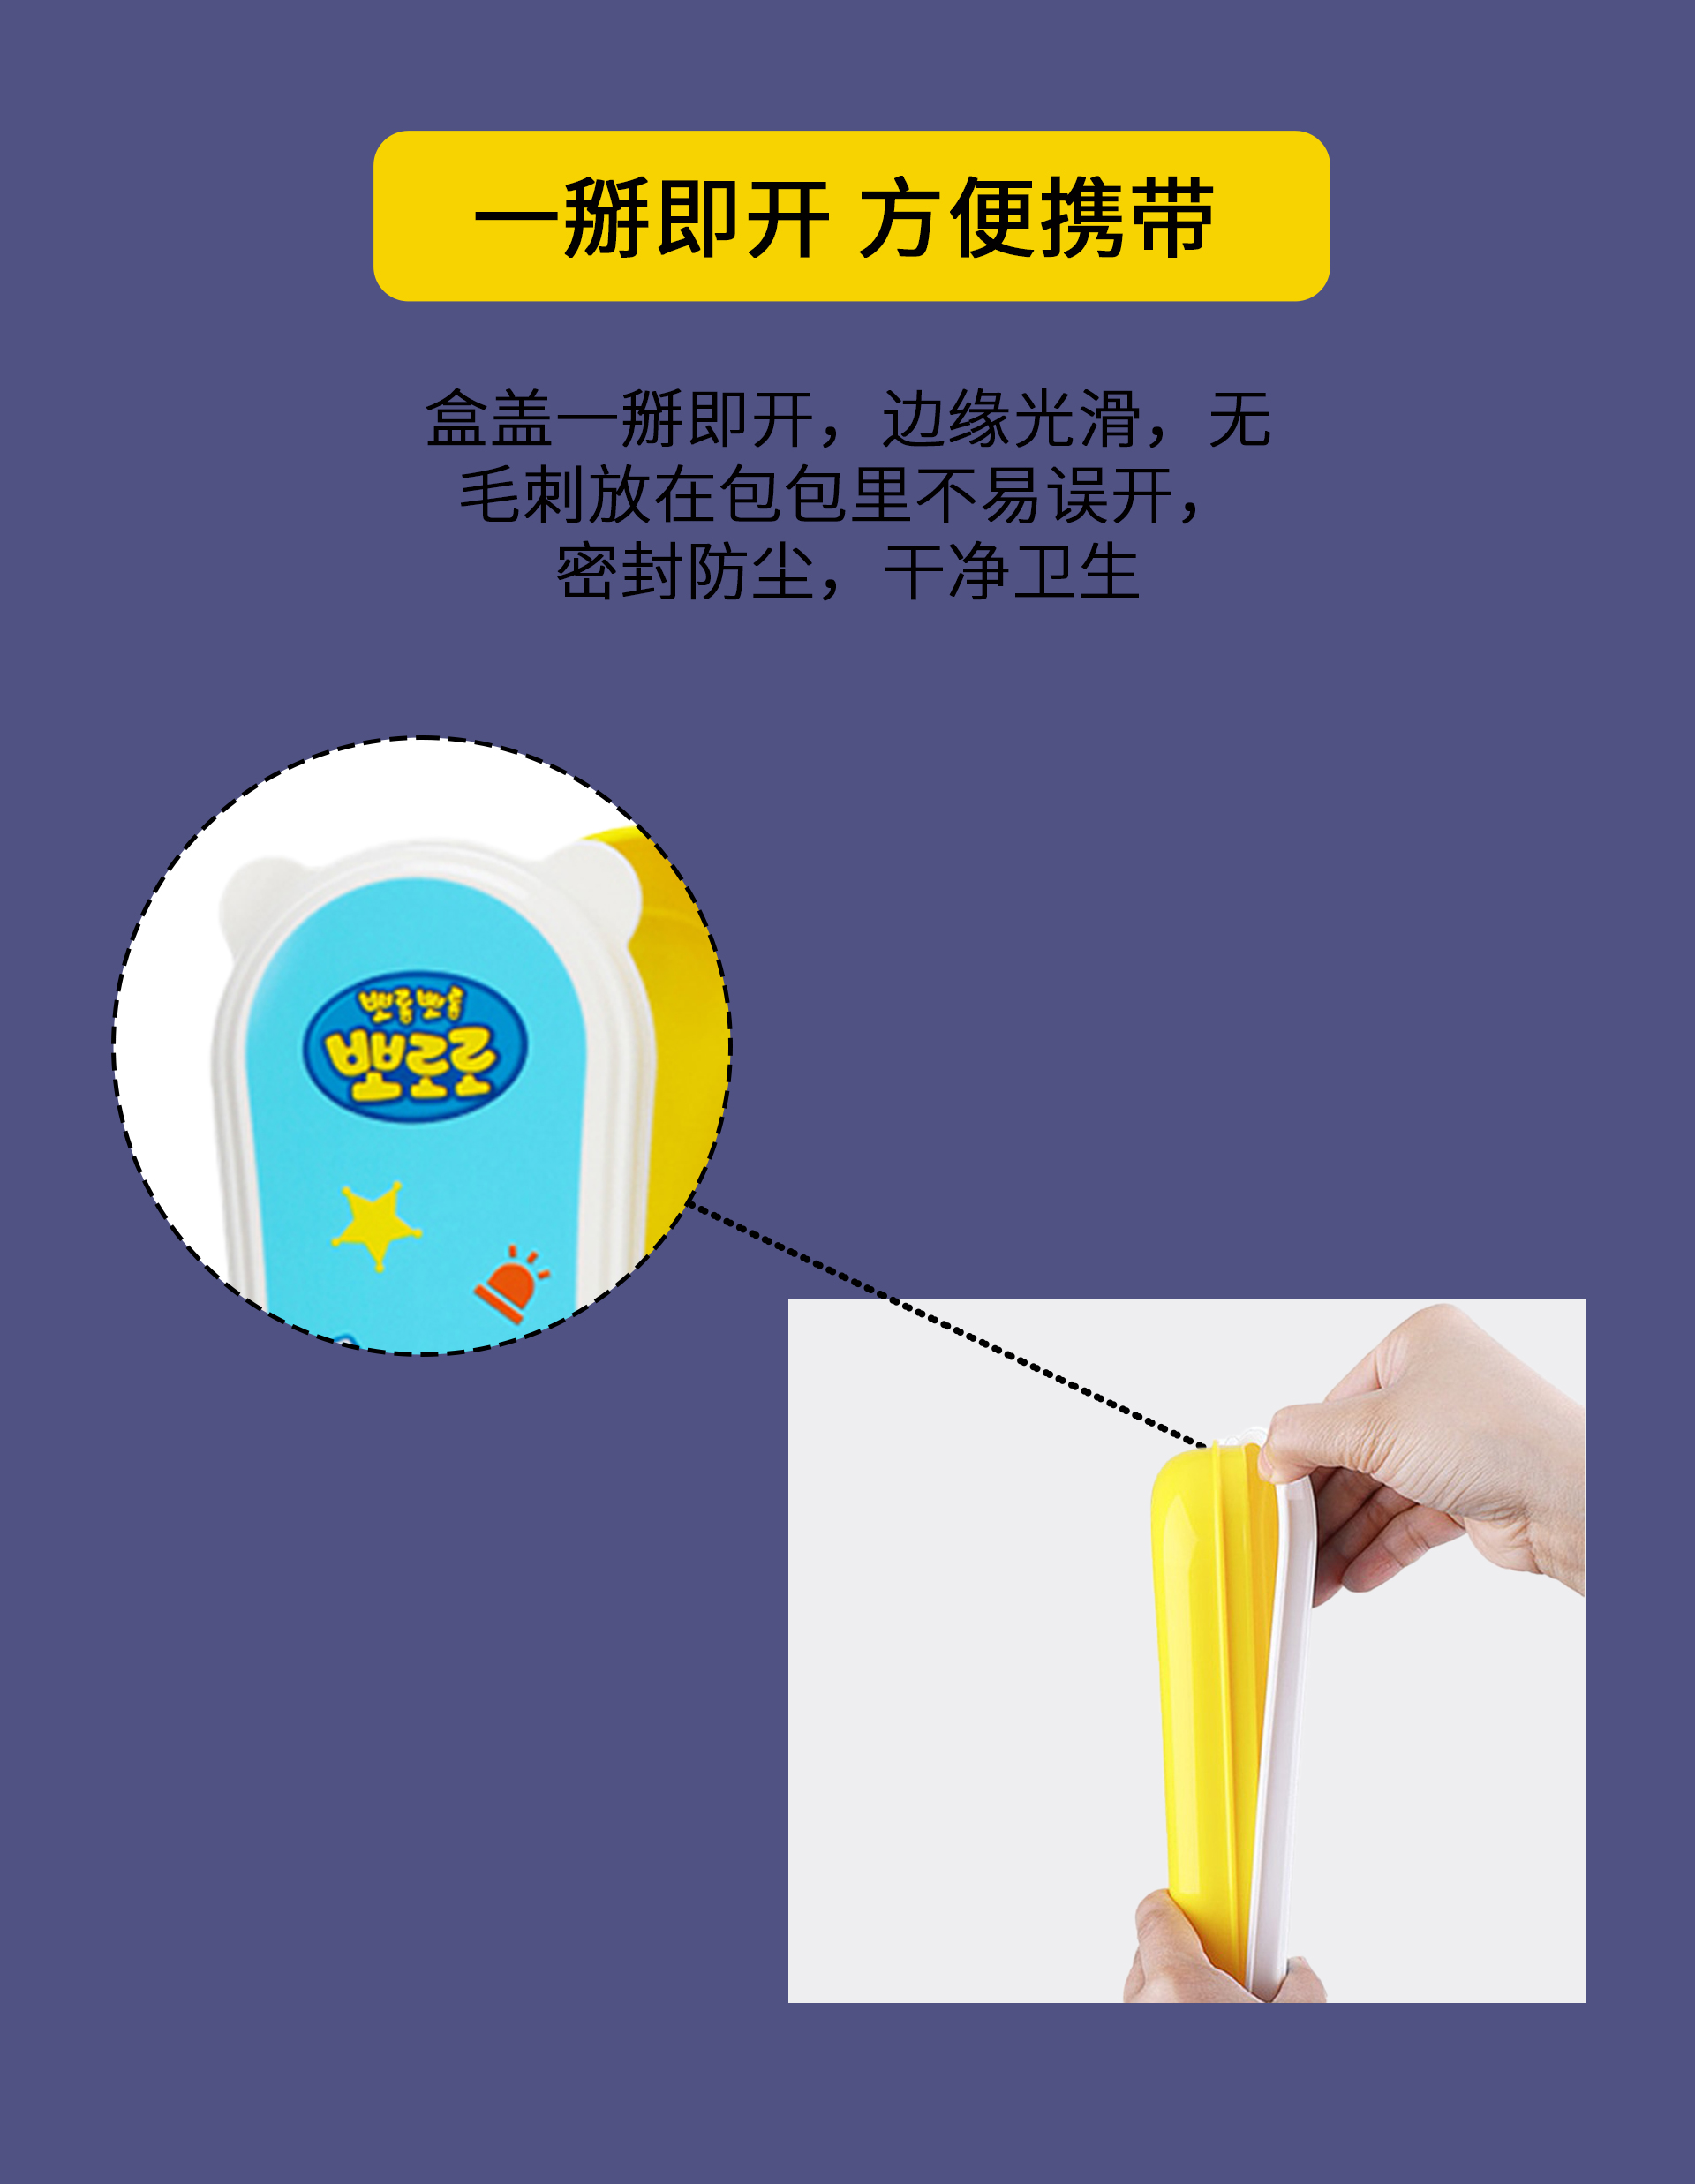 \"啵乐乐警察筷子勺子盒子三件套,产品编号104936\"/